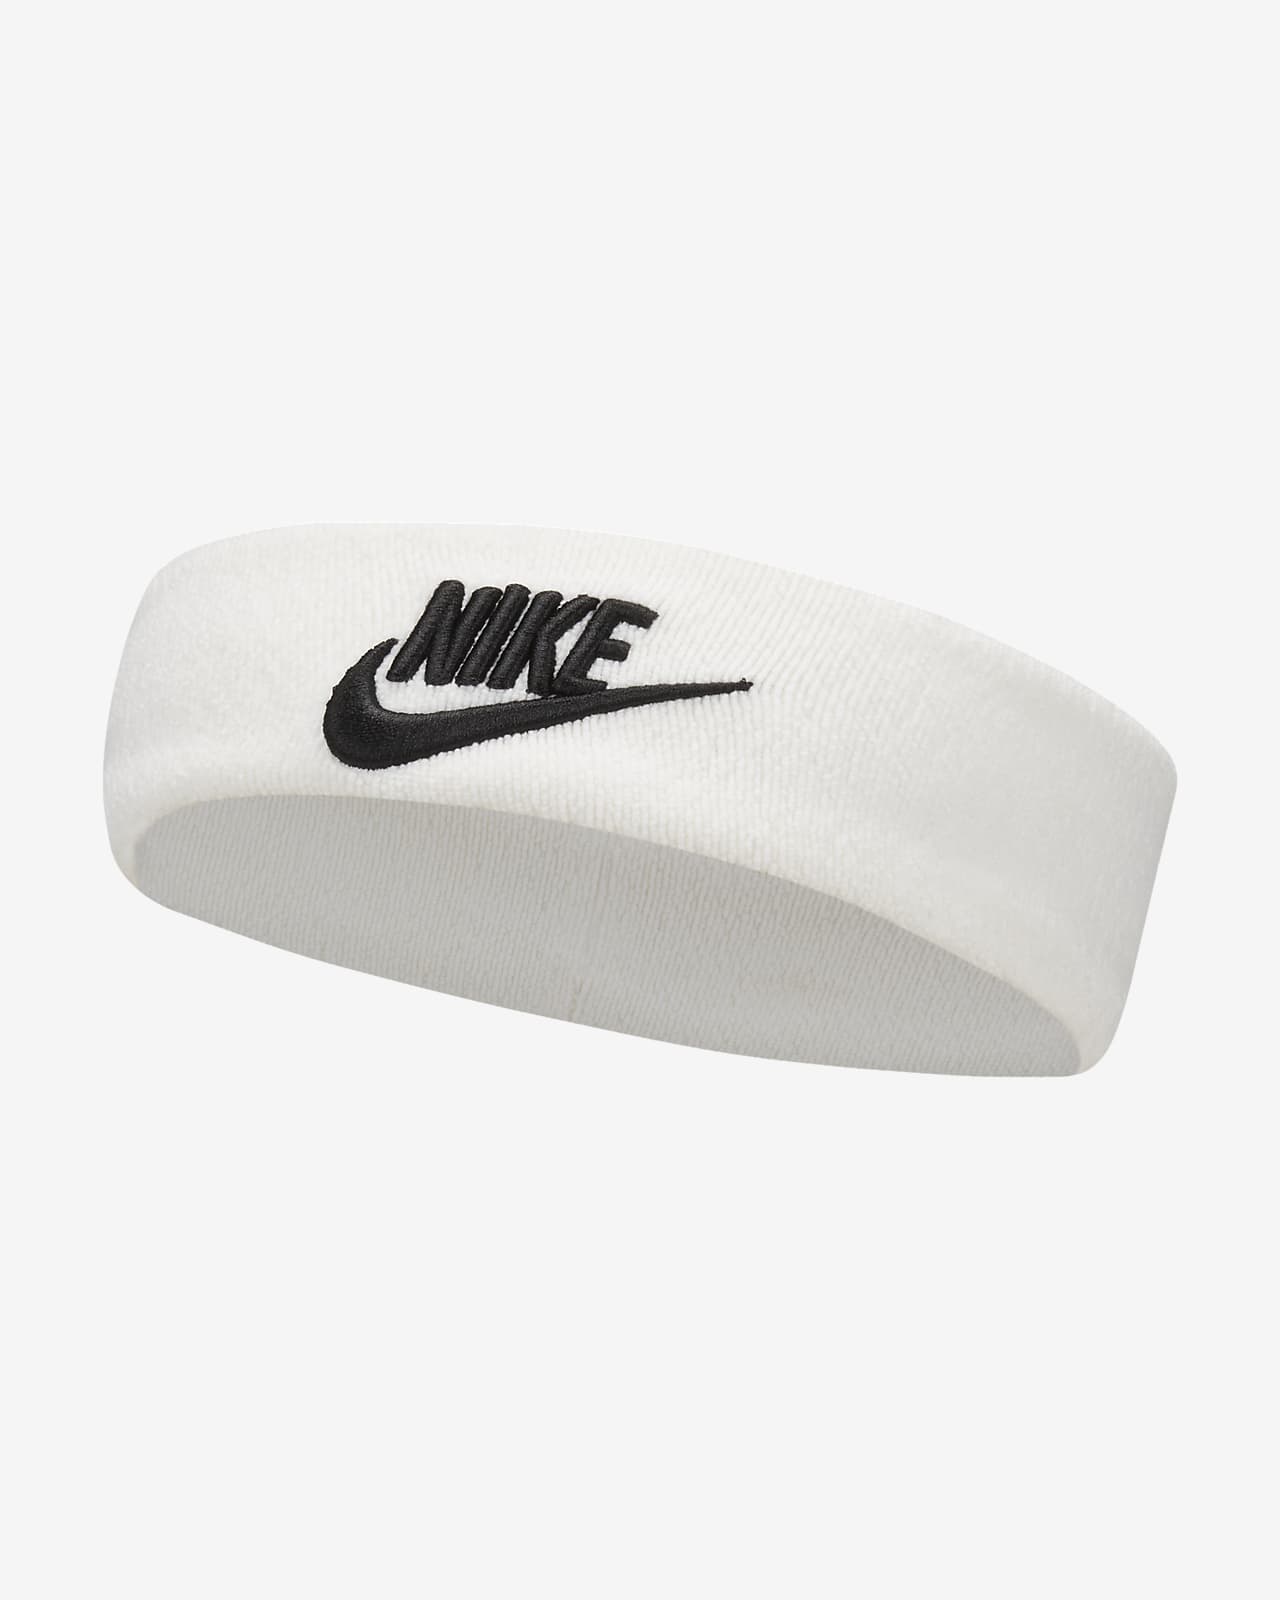 Bandeau Nike Yoga - Bandeaux - Accessoires - Vêtements Homme